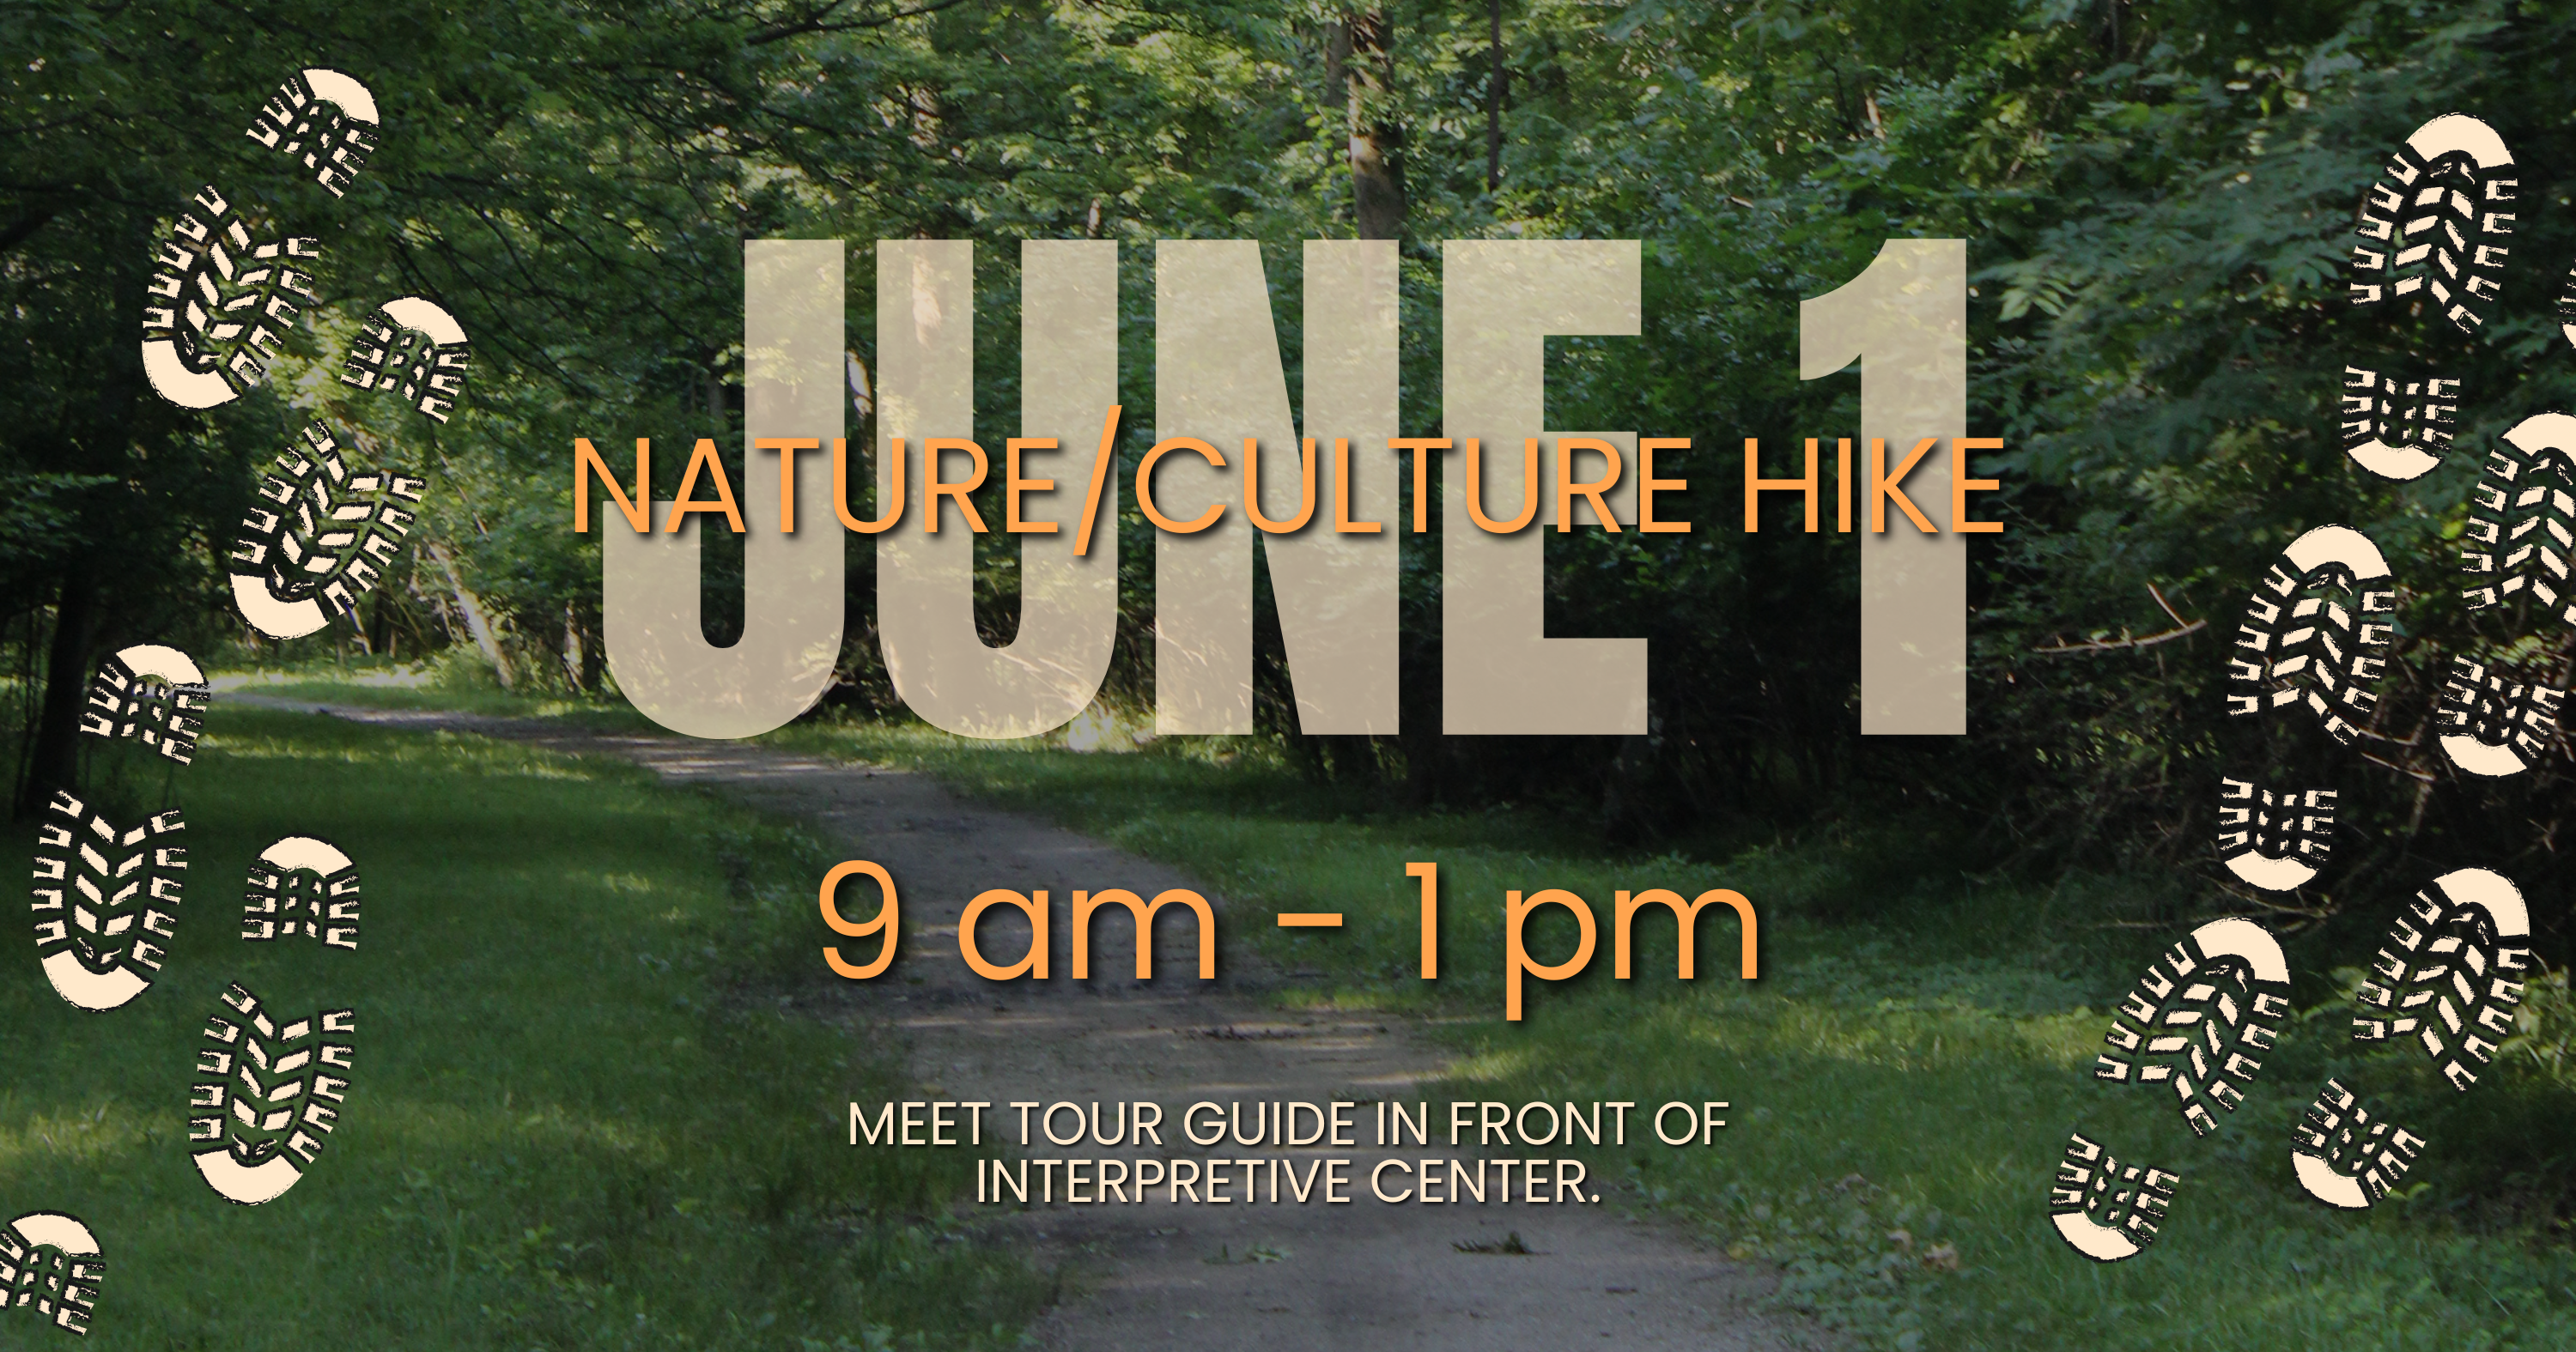 Nature/Culture Hike